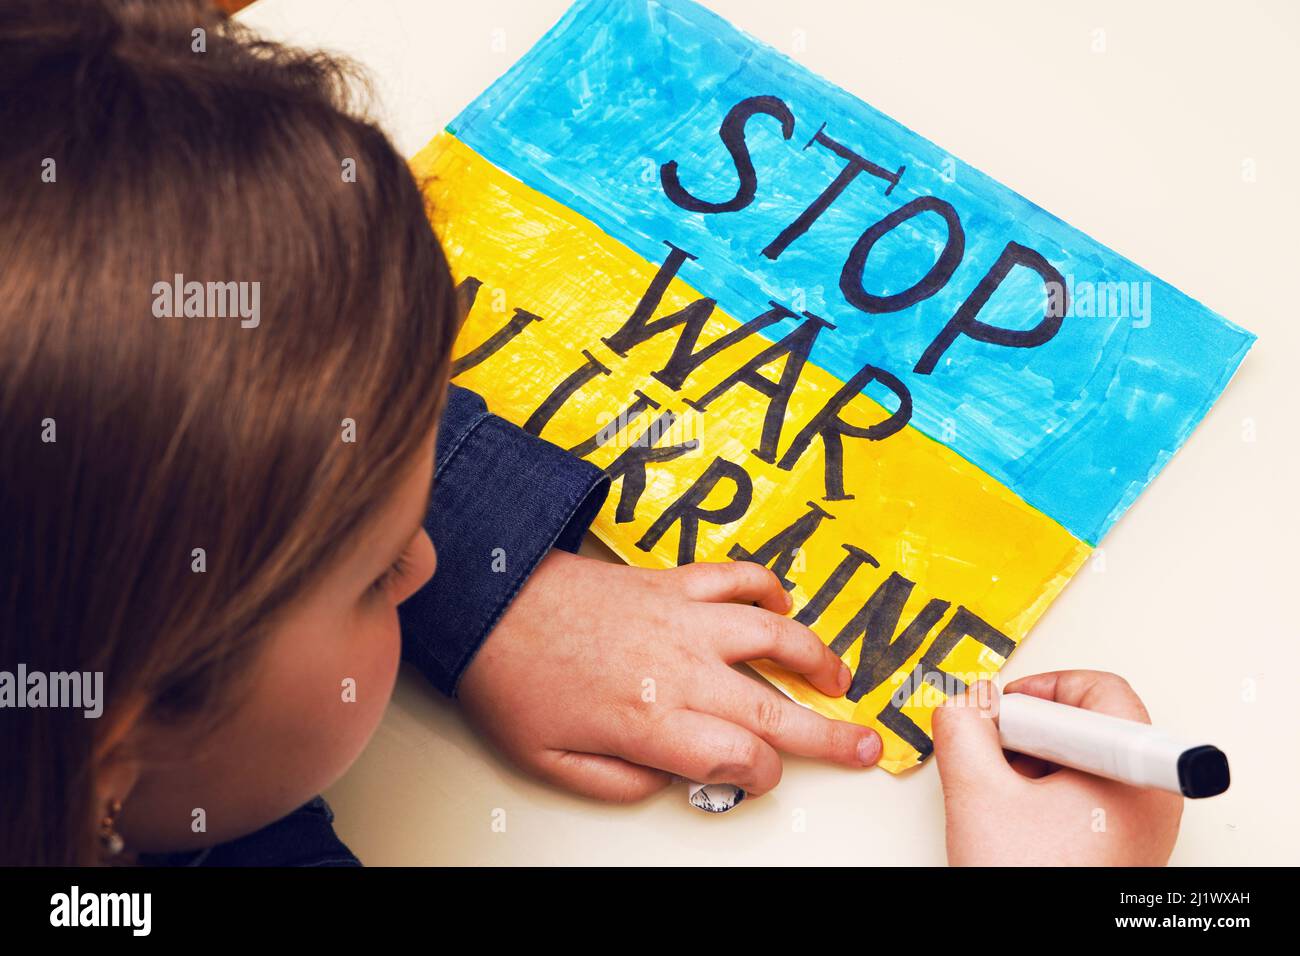 Das kleine ukrainische Mädchen zeichnet ein Bild mit der Flagge der Ukraine und dem Text STOP WAR IN DER UKRAINE. Russische Invasion der Ukraine. Stockfoto